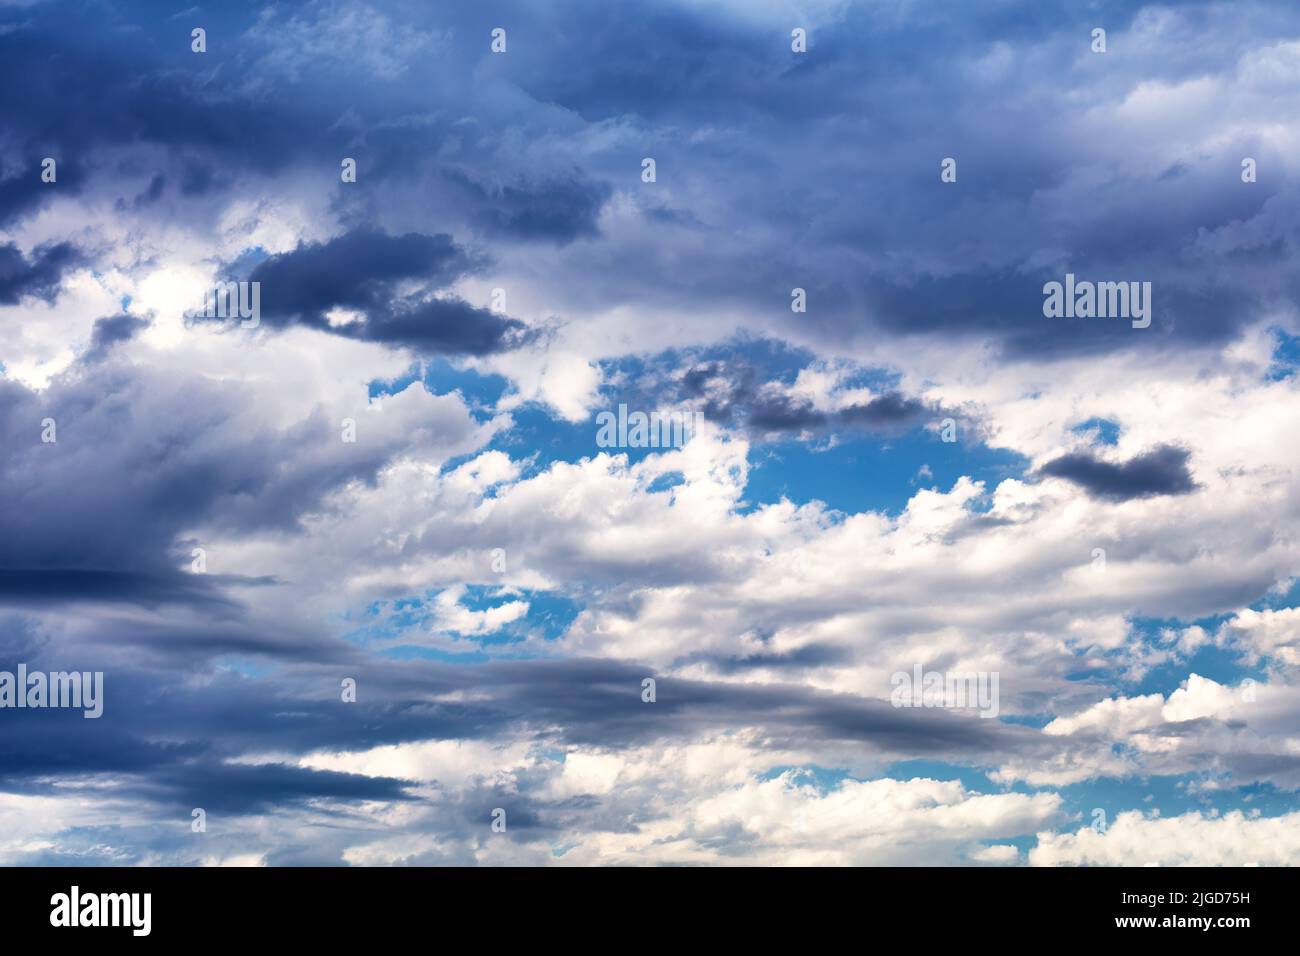 Cielo azul y fondo nuboso que muestra una posible tormenta Foto de stock